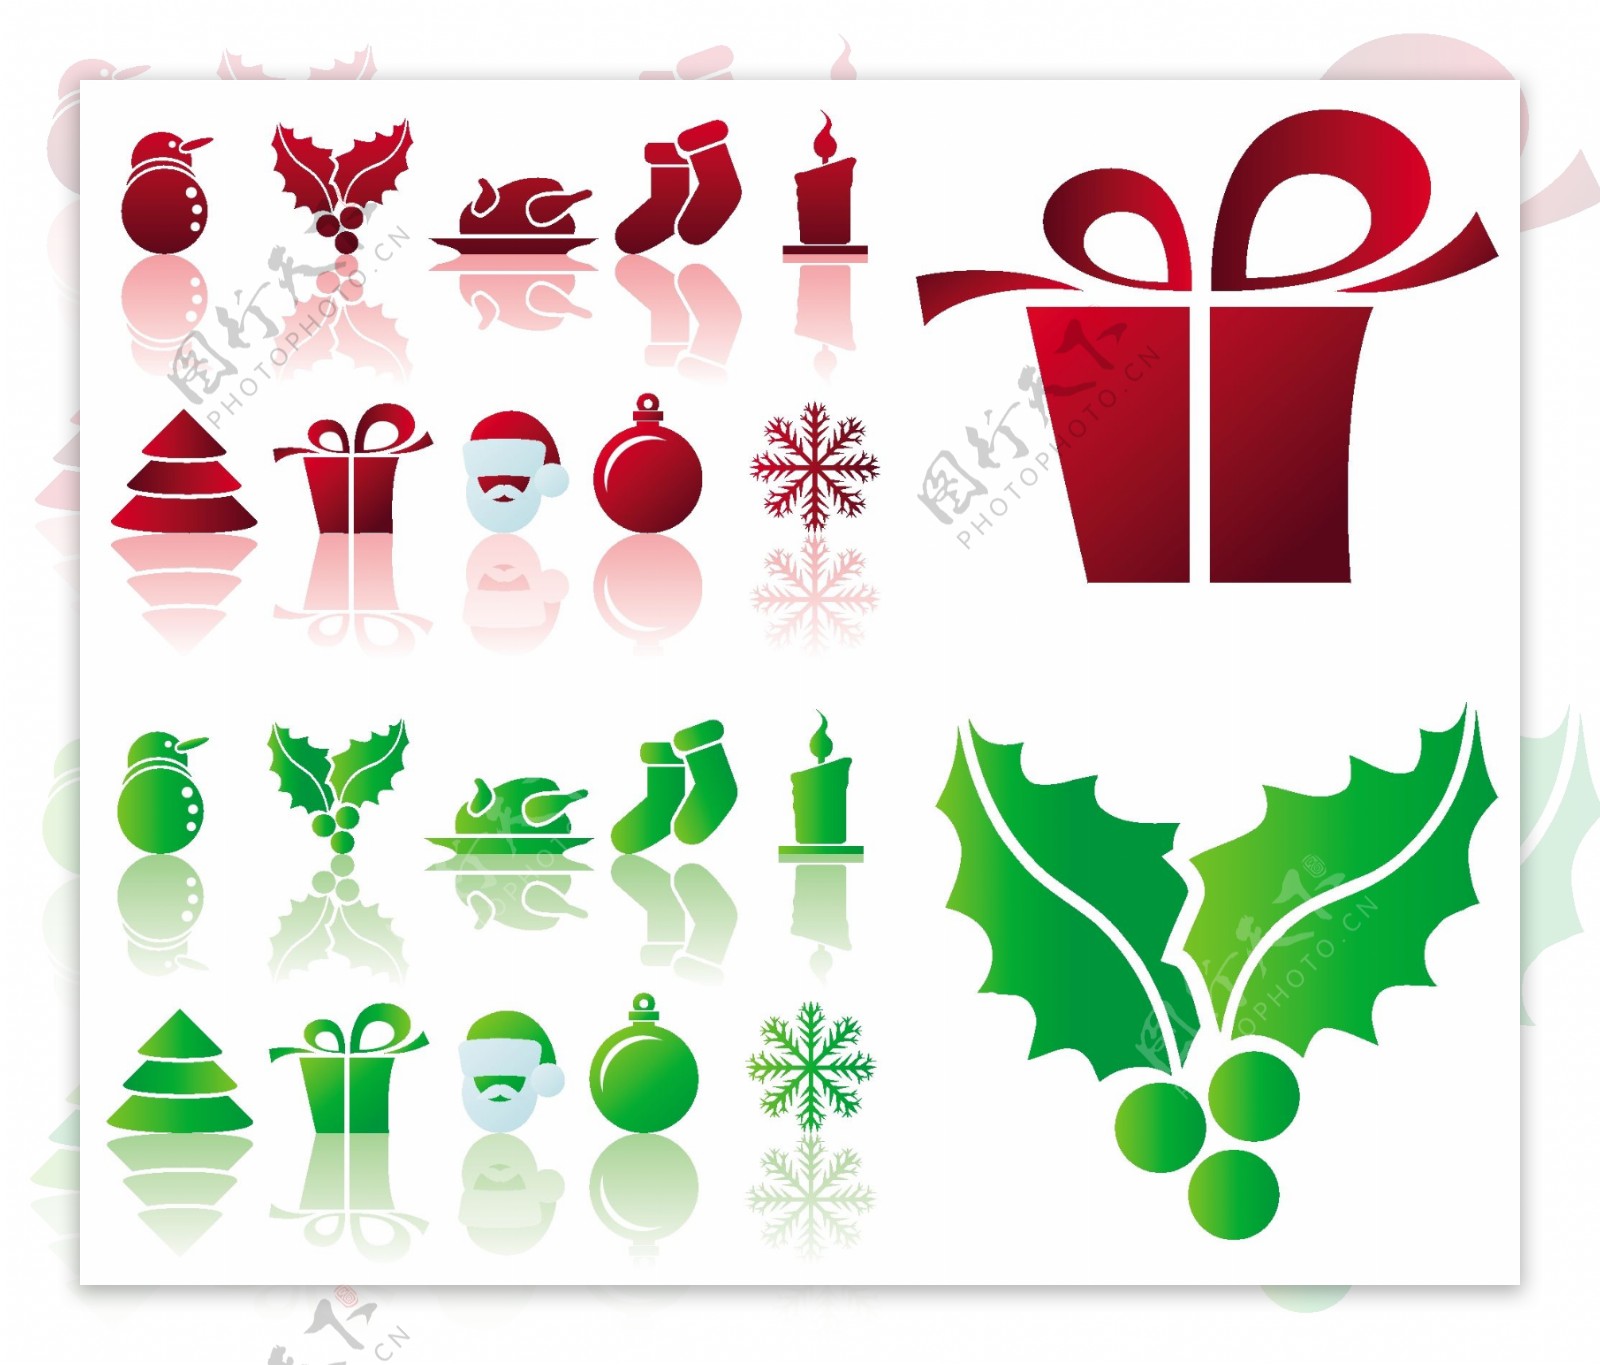 矢量圣诞节图标雪人火鸡圣诞装饰袜子蜡烛圣诞树礼物圣诞老人雪花装饰球红色绿色